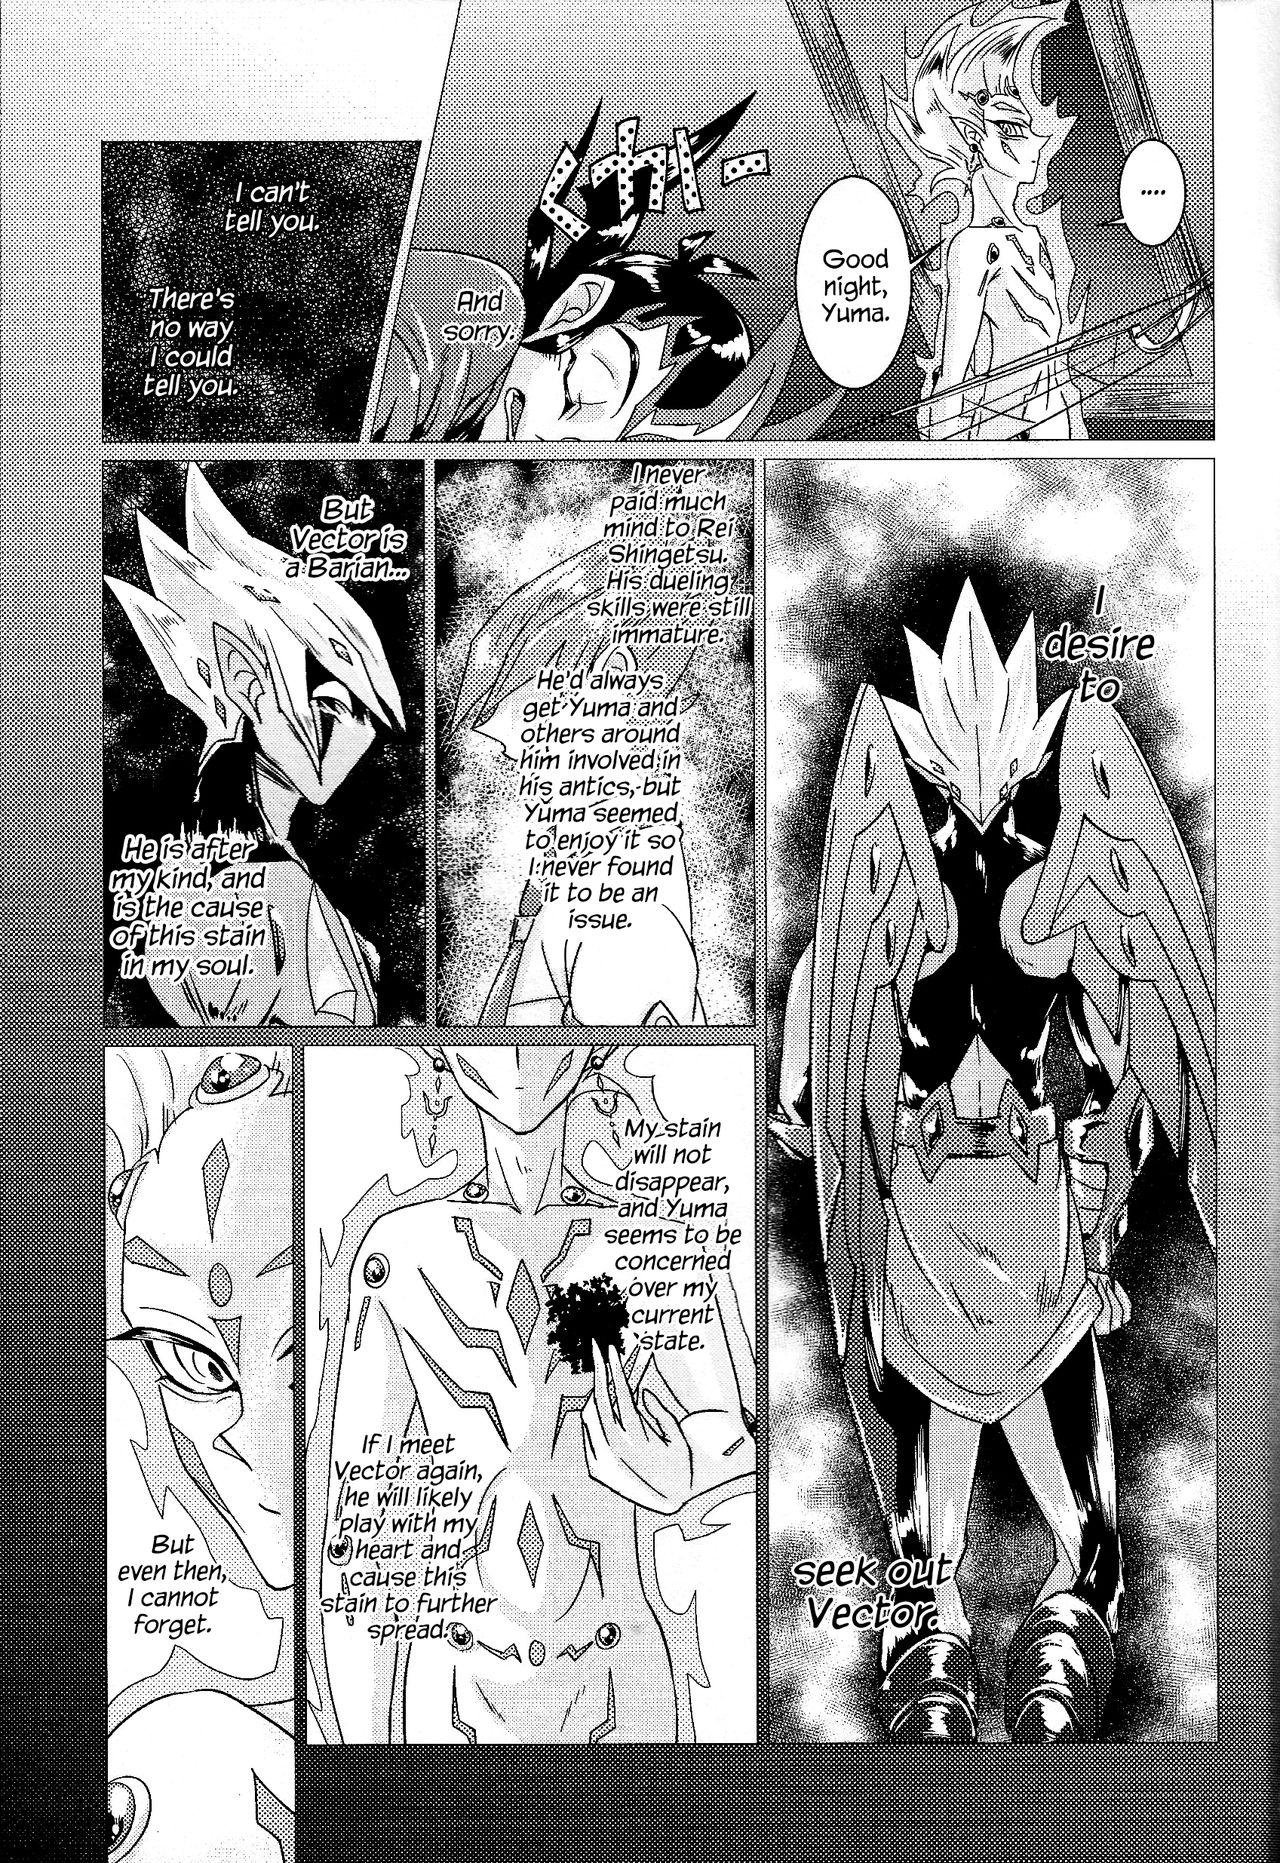 Submission Shingetsu no Yoru ni wa Kare ga Kuru - Yu-gi-oh zexal Peludo - Page 6